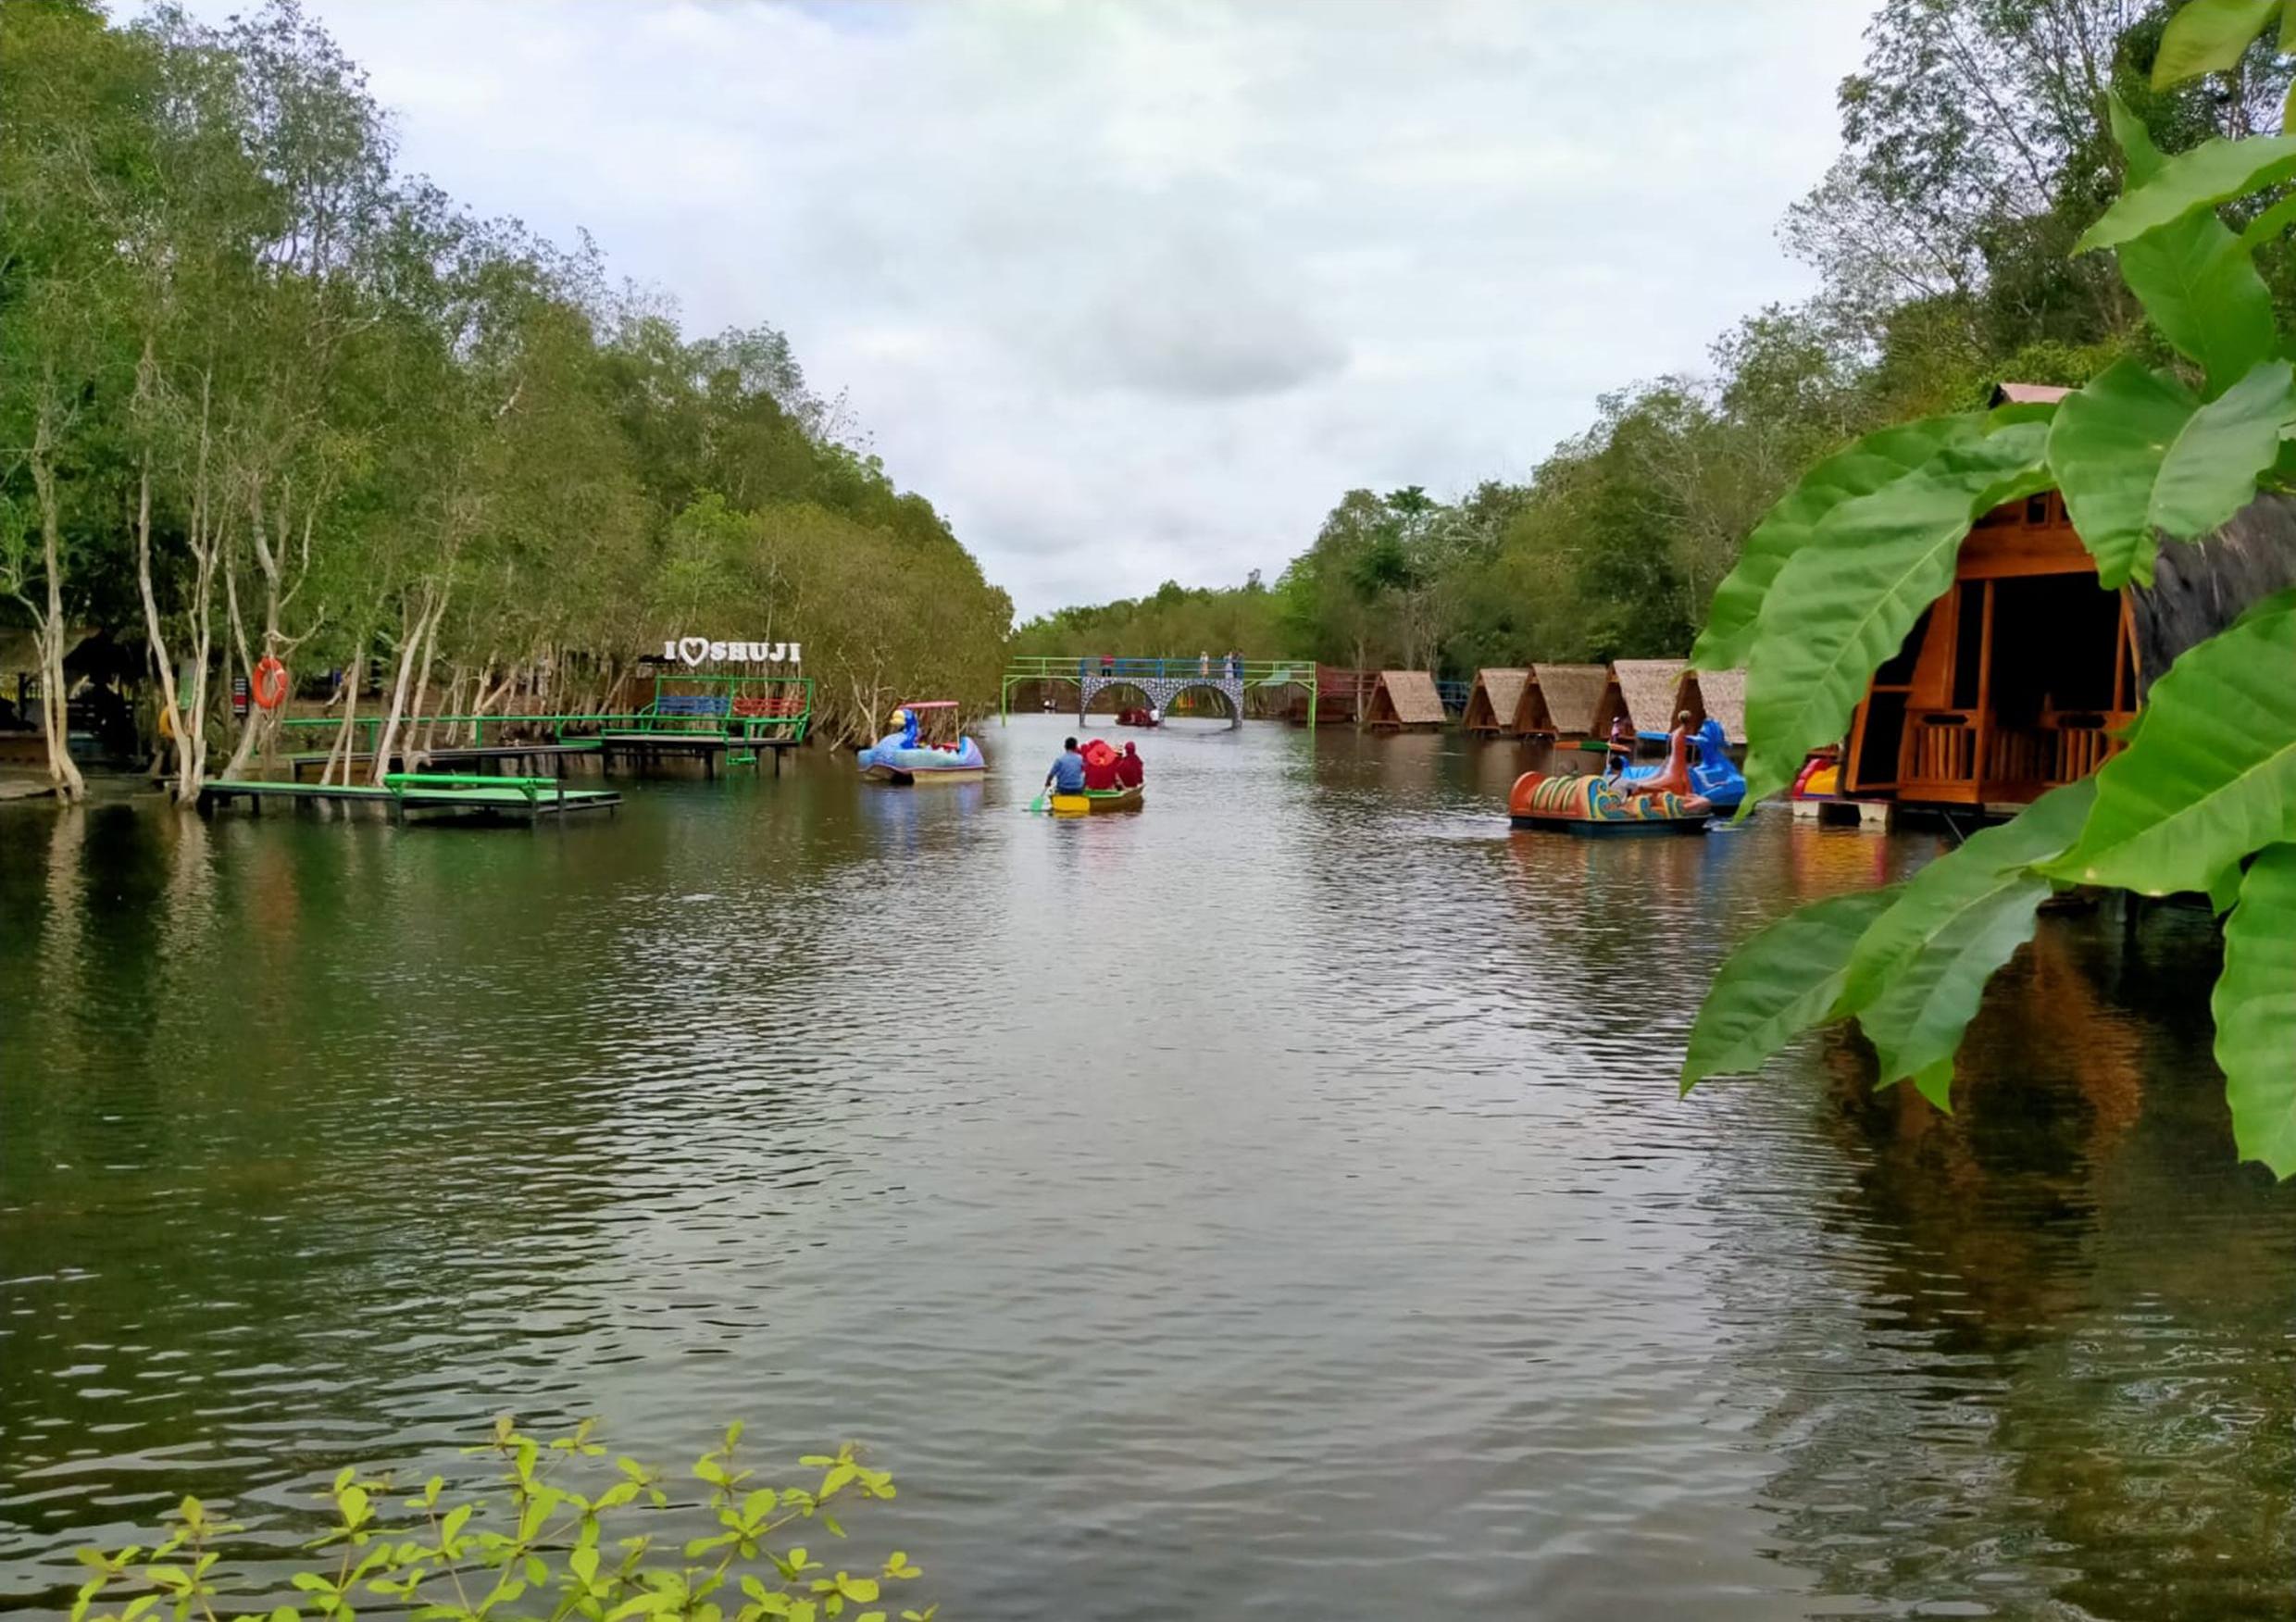 Danau Shuji Akan Tambah Fasilitas Camping Ground dan Waterboom